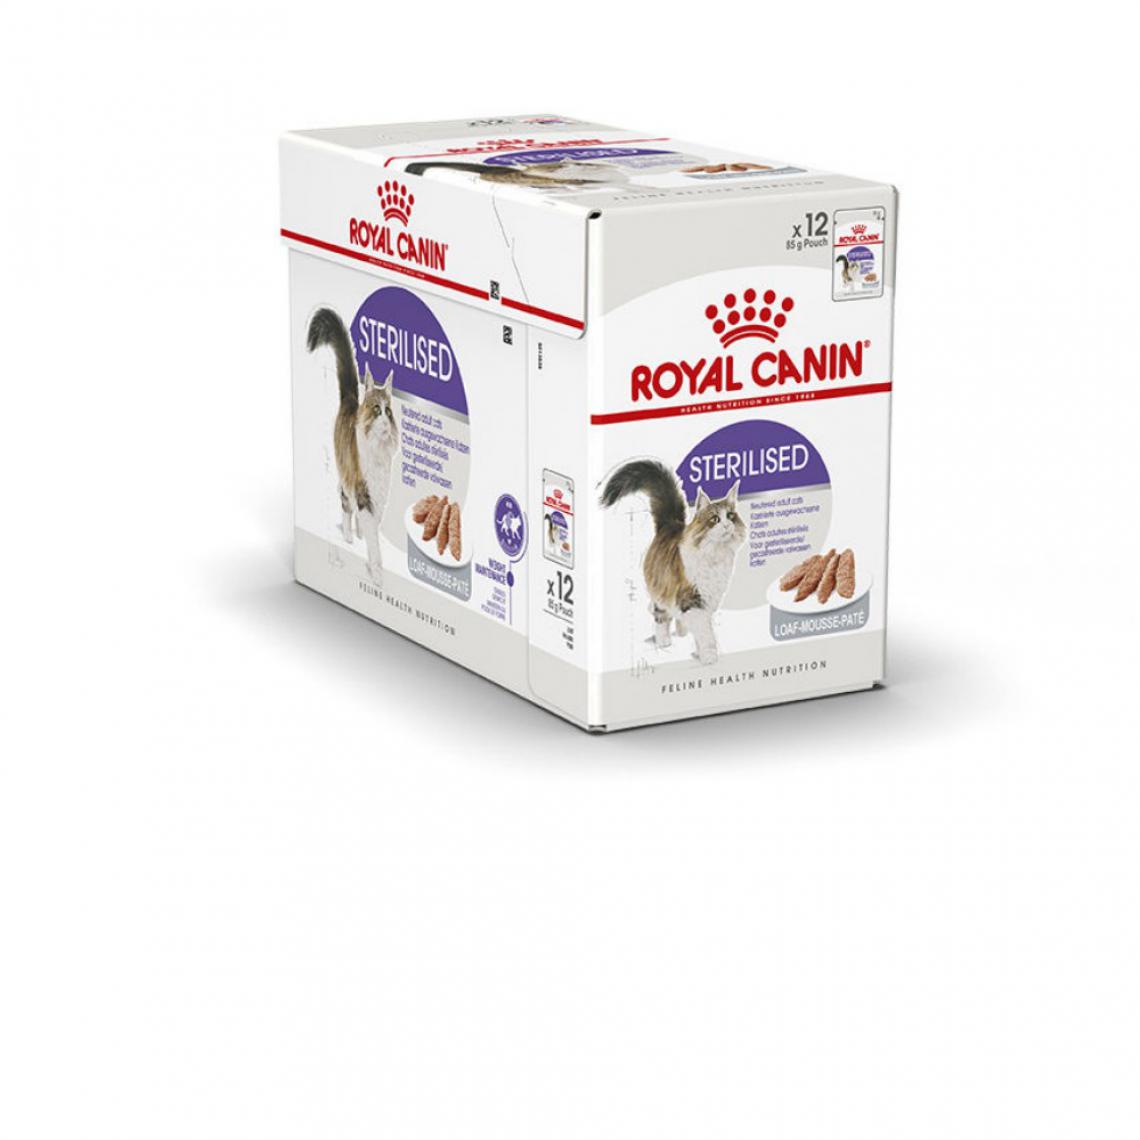 Royal Canin - Pâtée pour chat ROYAL CANIN Sterilisé Mousse ultra tendre 12 sachets x 85g - Alimentation humide pour chat